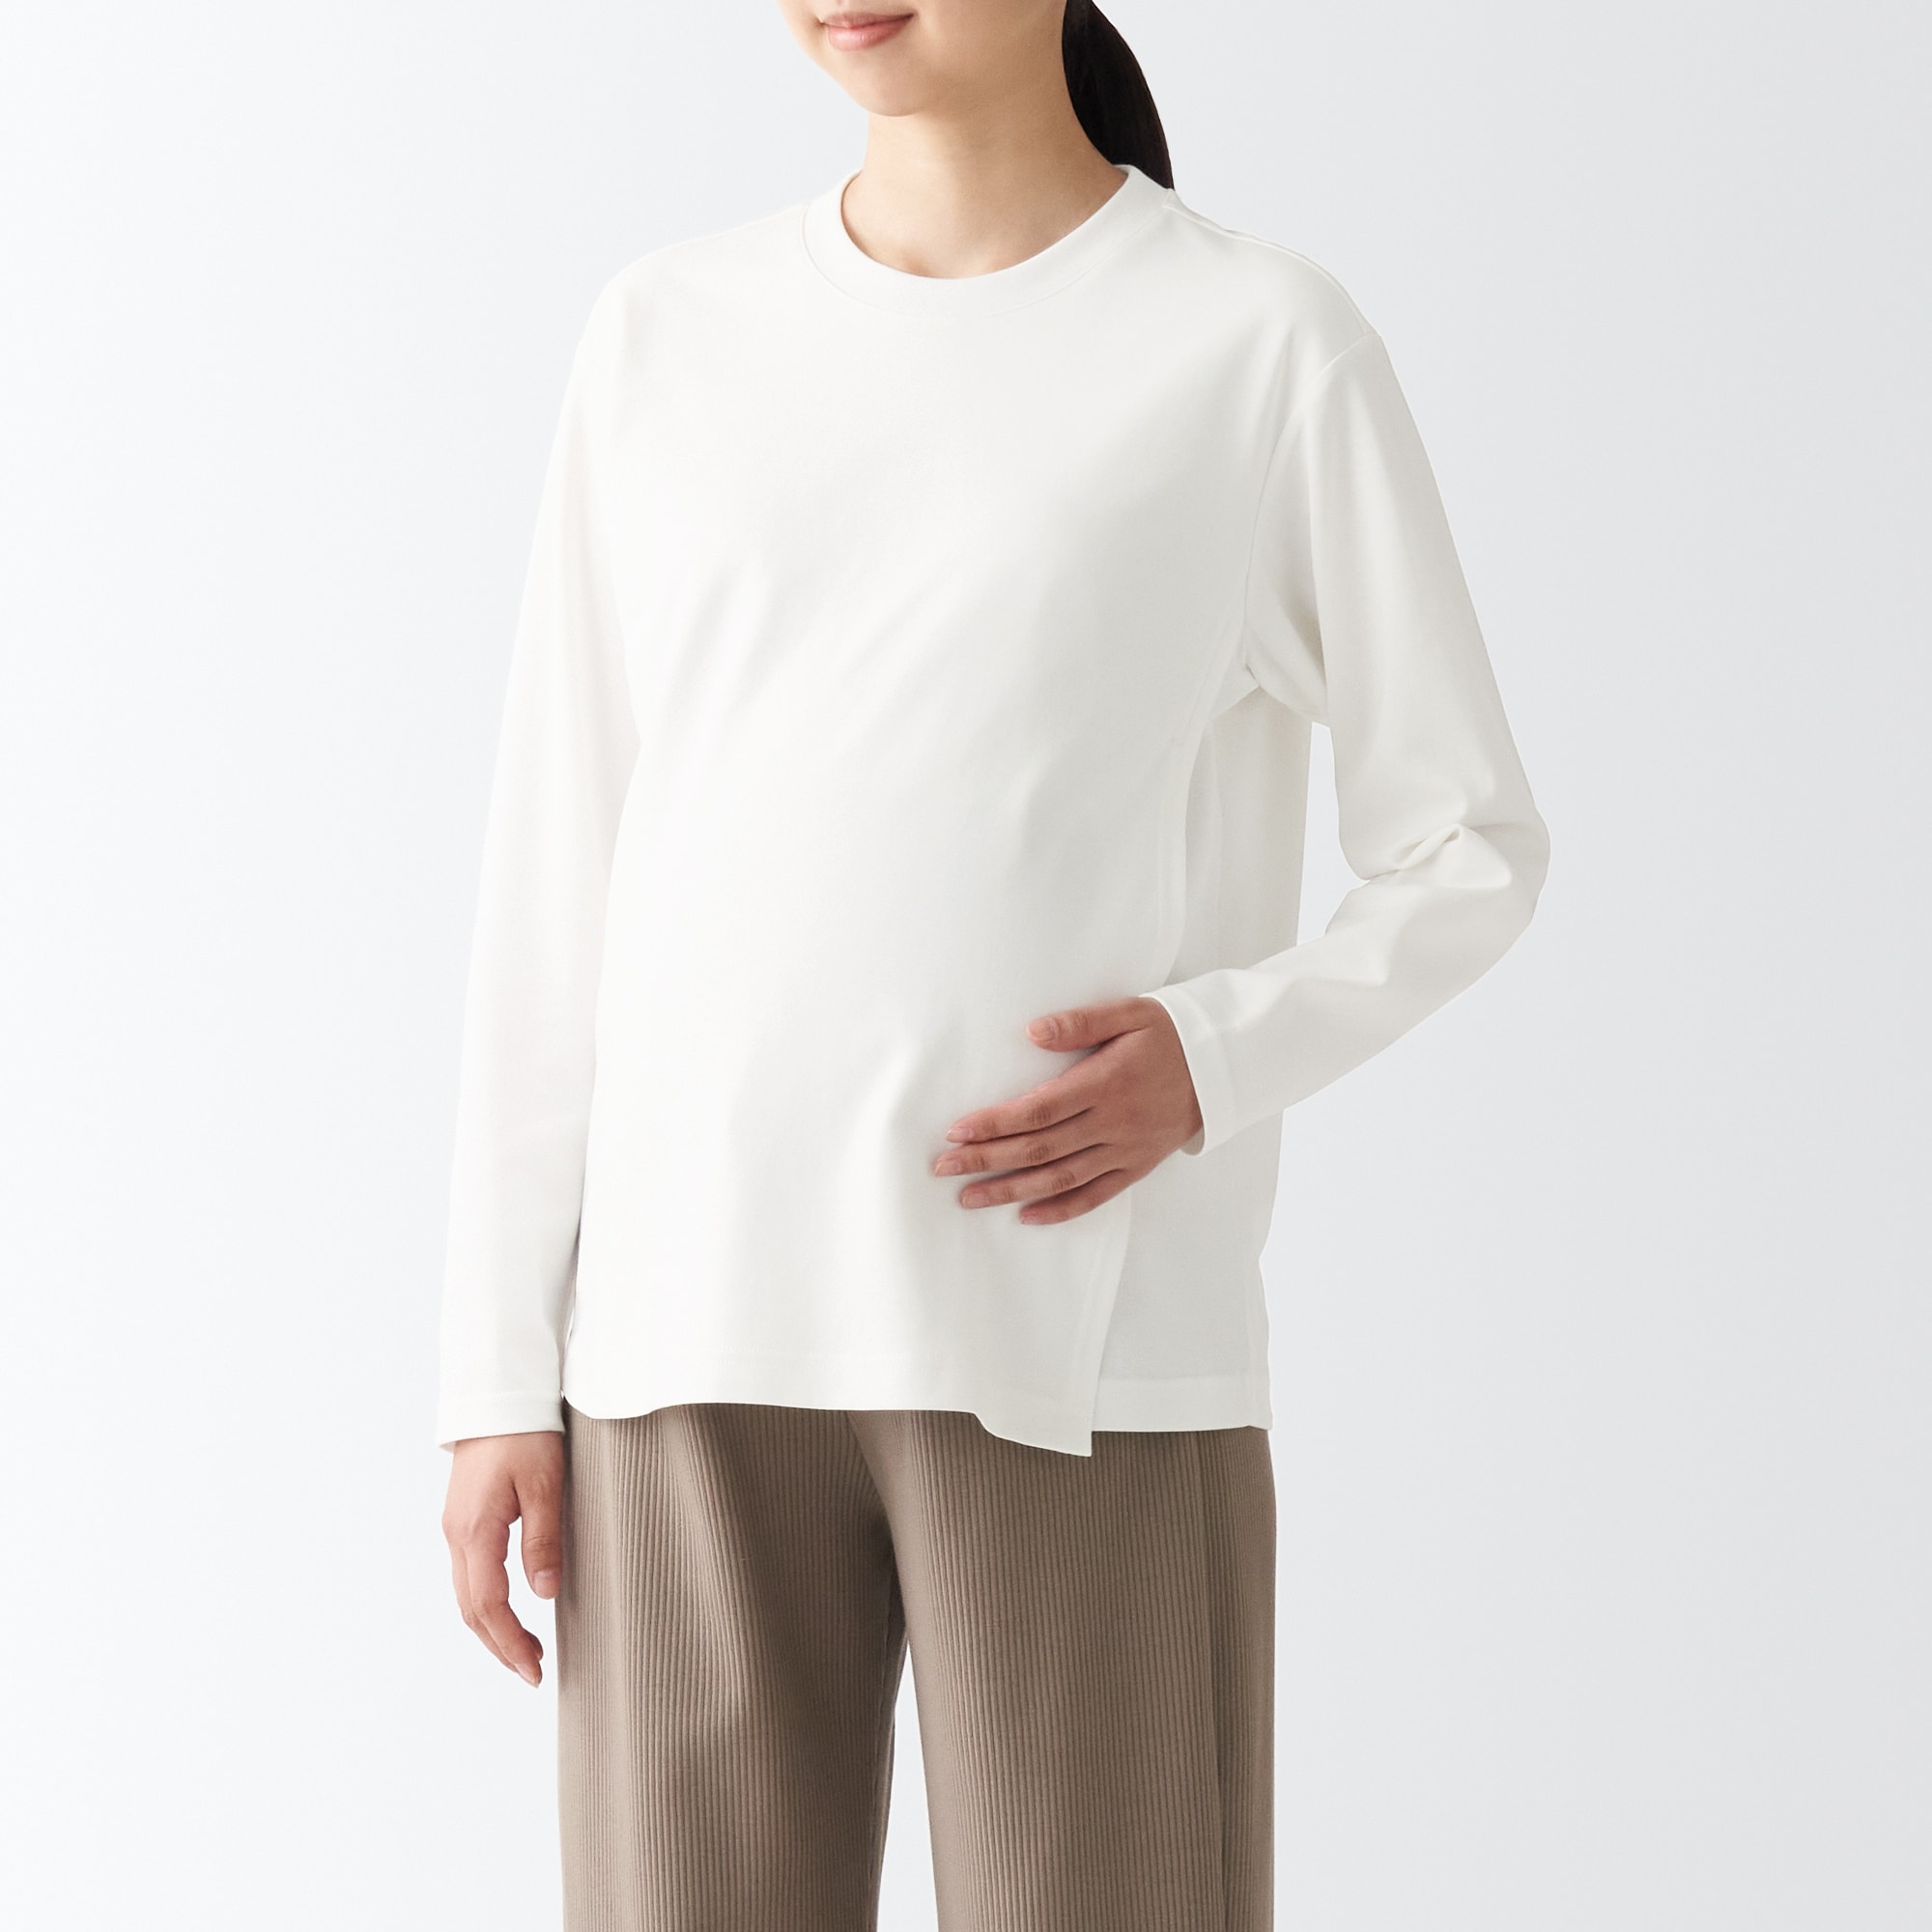 무인양품 일본 임부복 더블 니트 수유 티셔츠